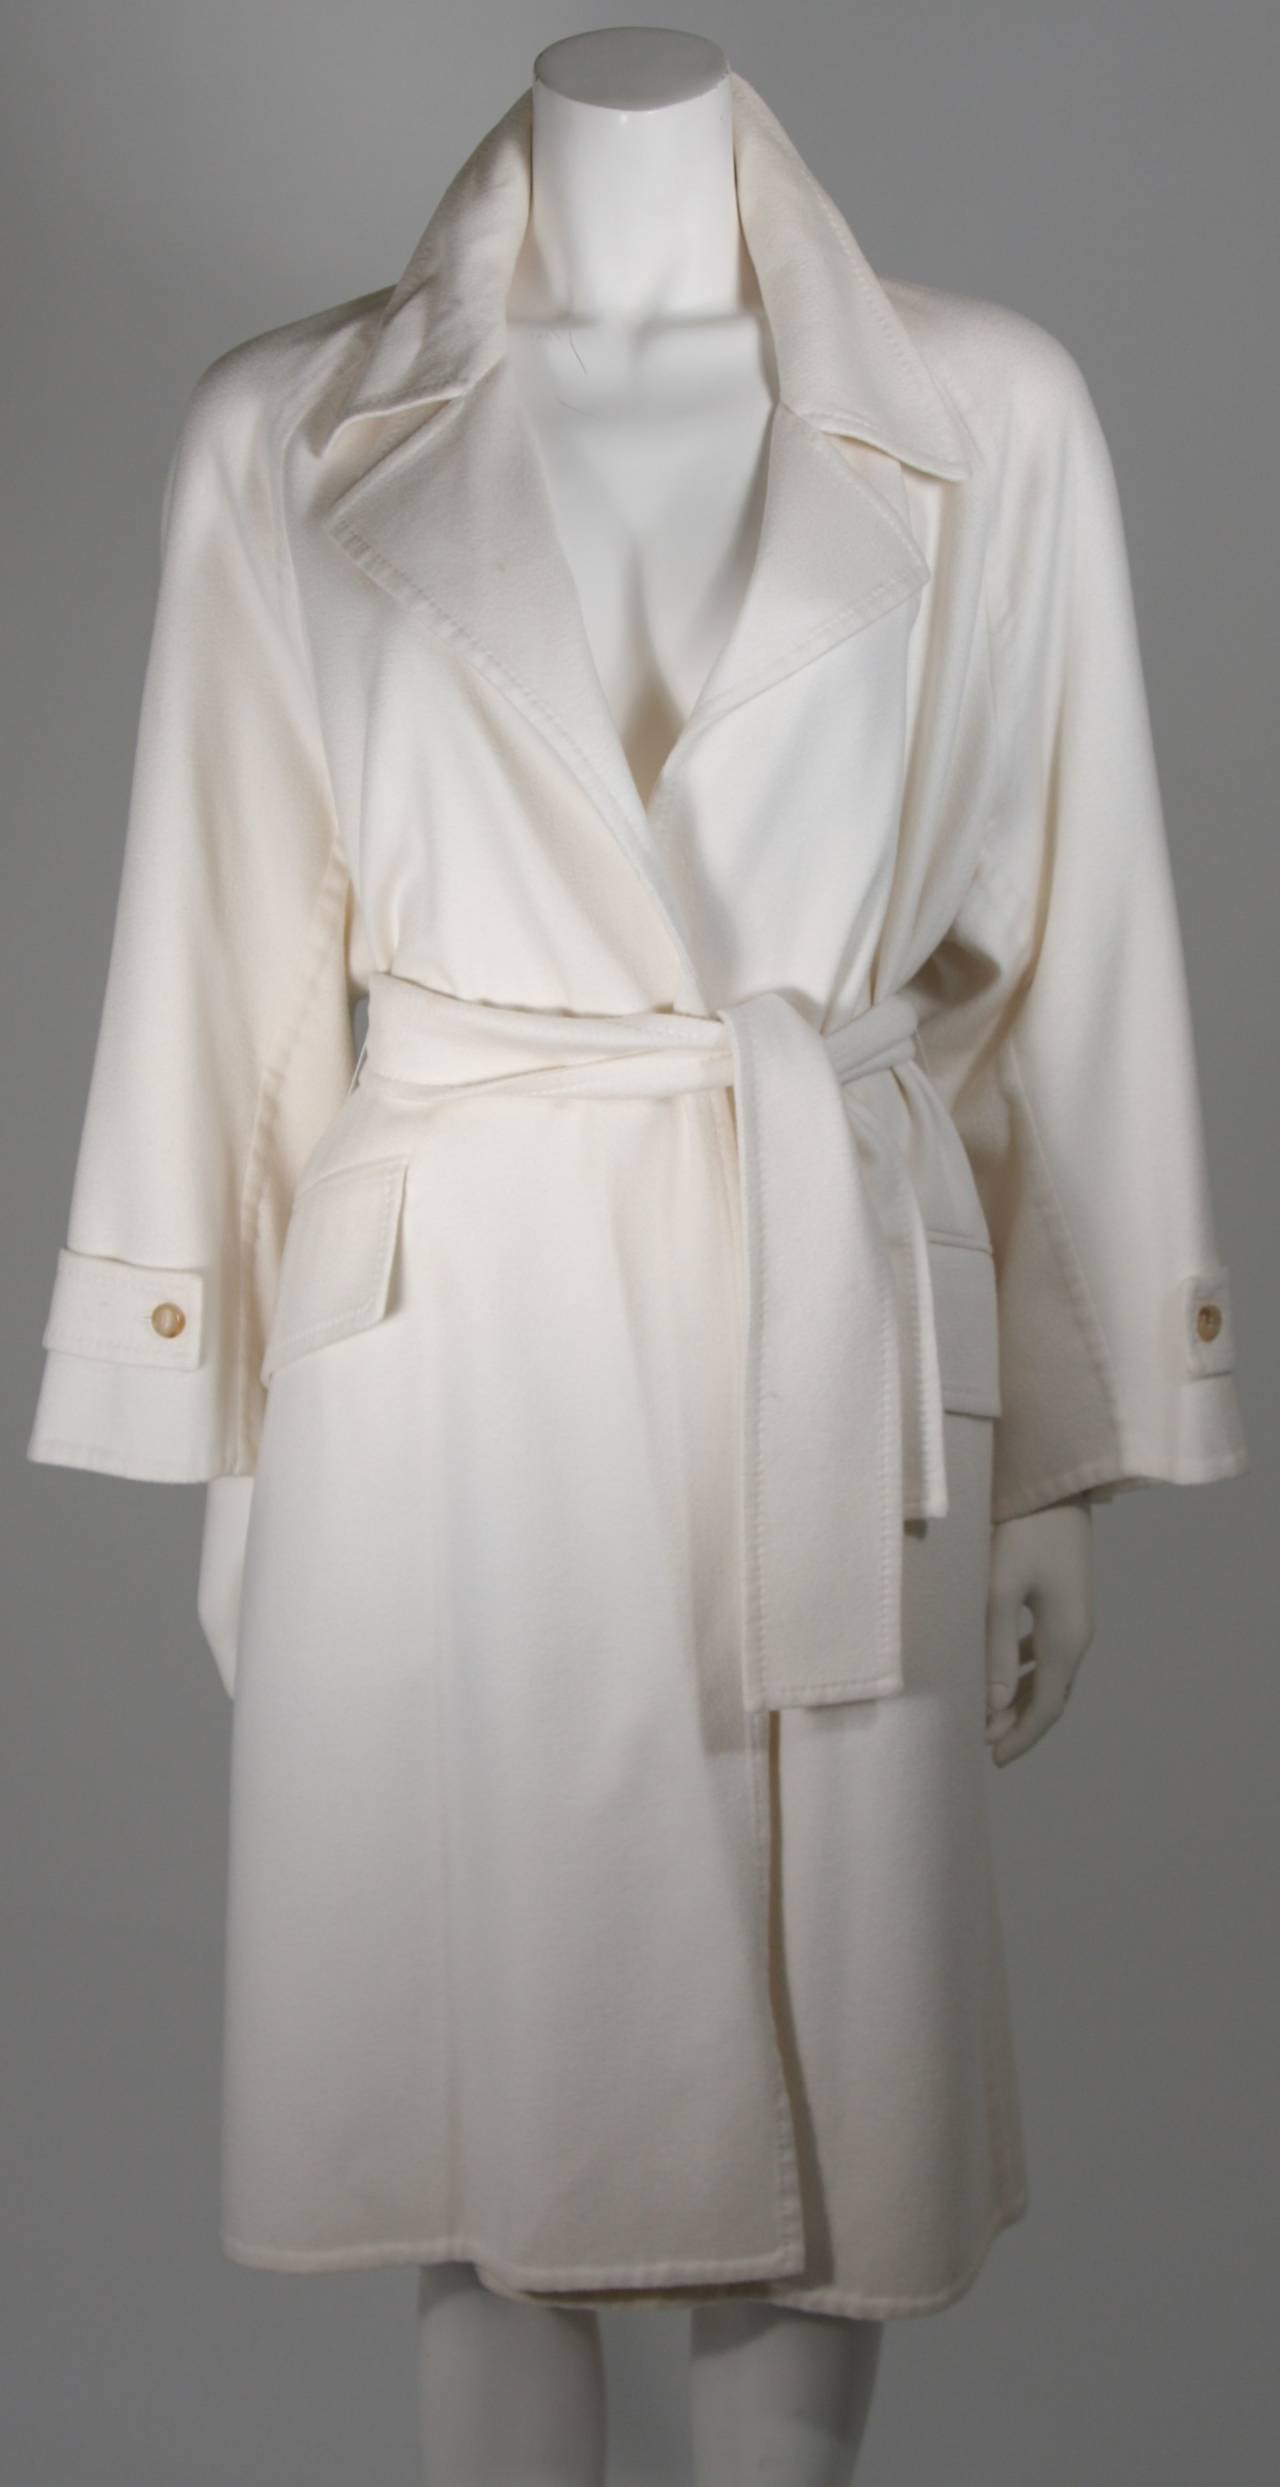 Ce manteau est composé d'un cachemire ultra souple dans une belle teinte brillante de blanc. Il y a des détails de poche avant et une fermeture de ceinture. Excellent état avec étiquette d'origine. Fabriqué en France.

N'hésitez pas à nous contacter